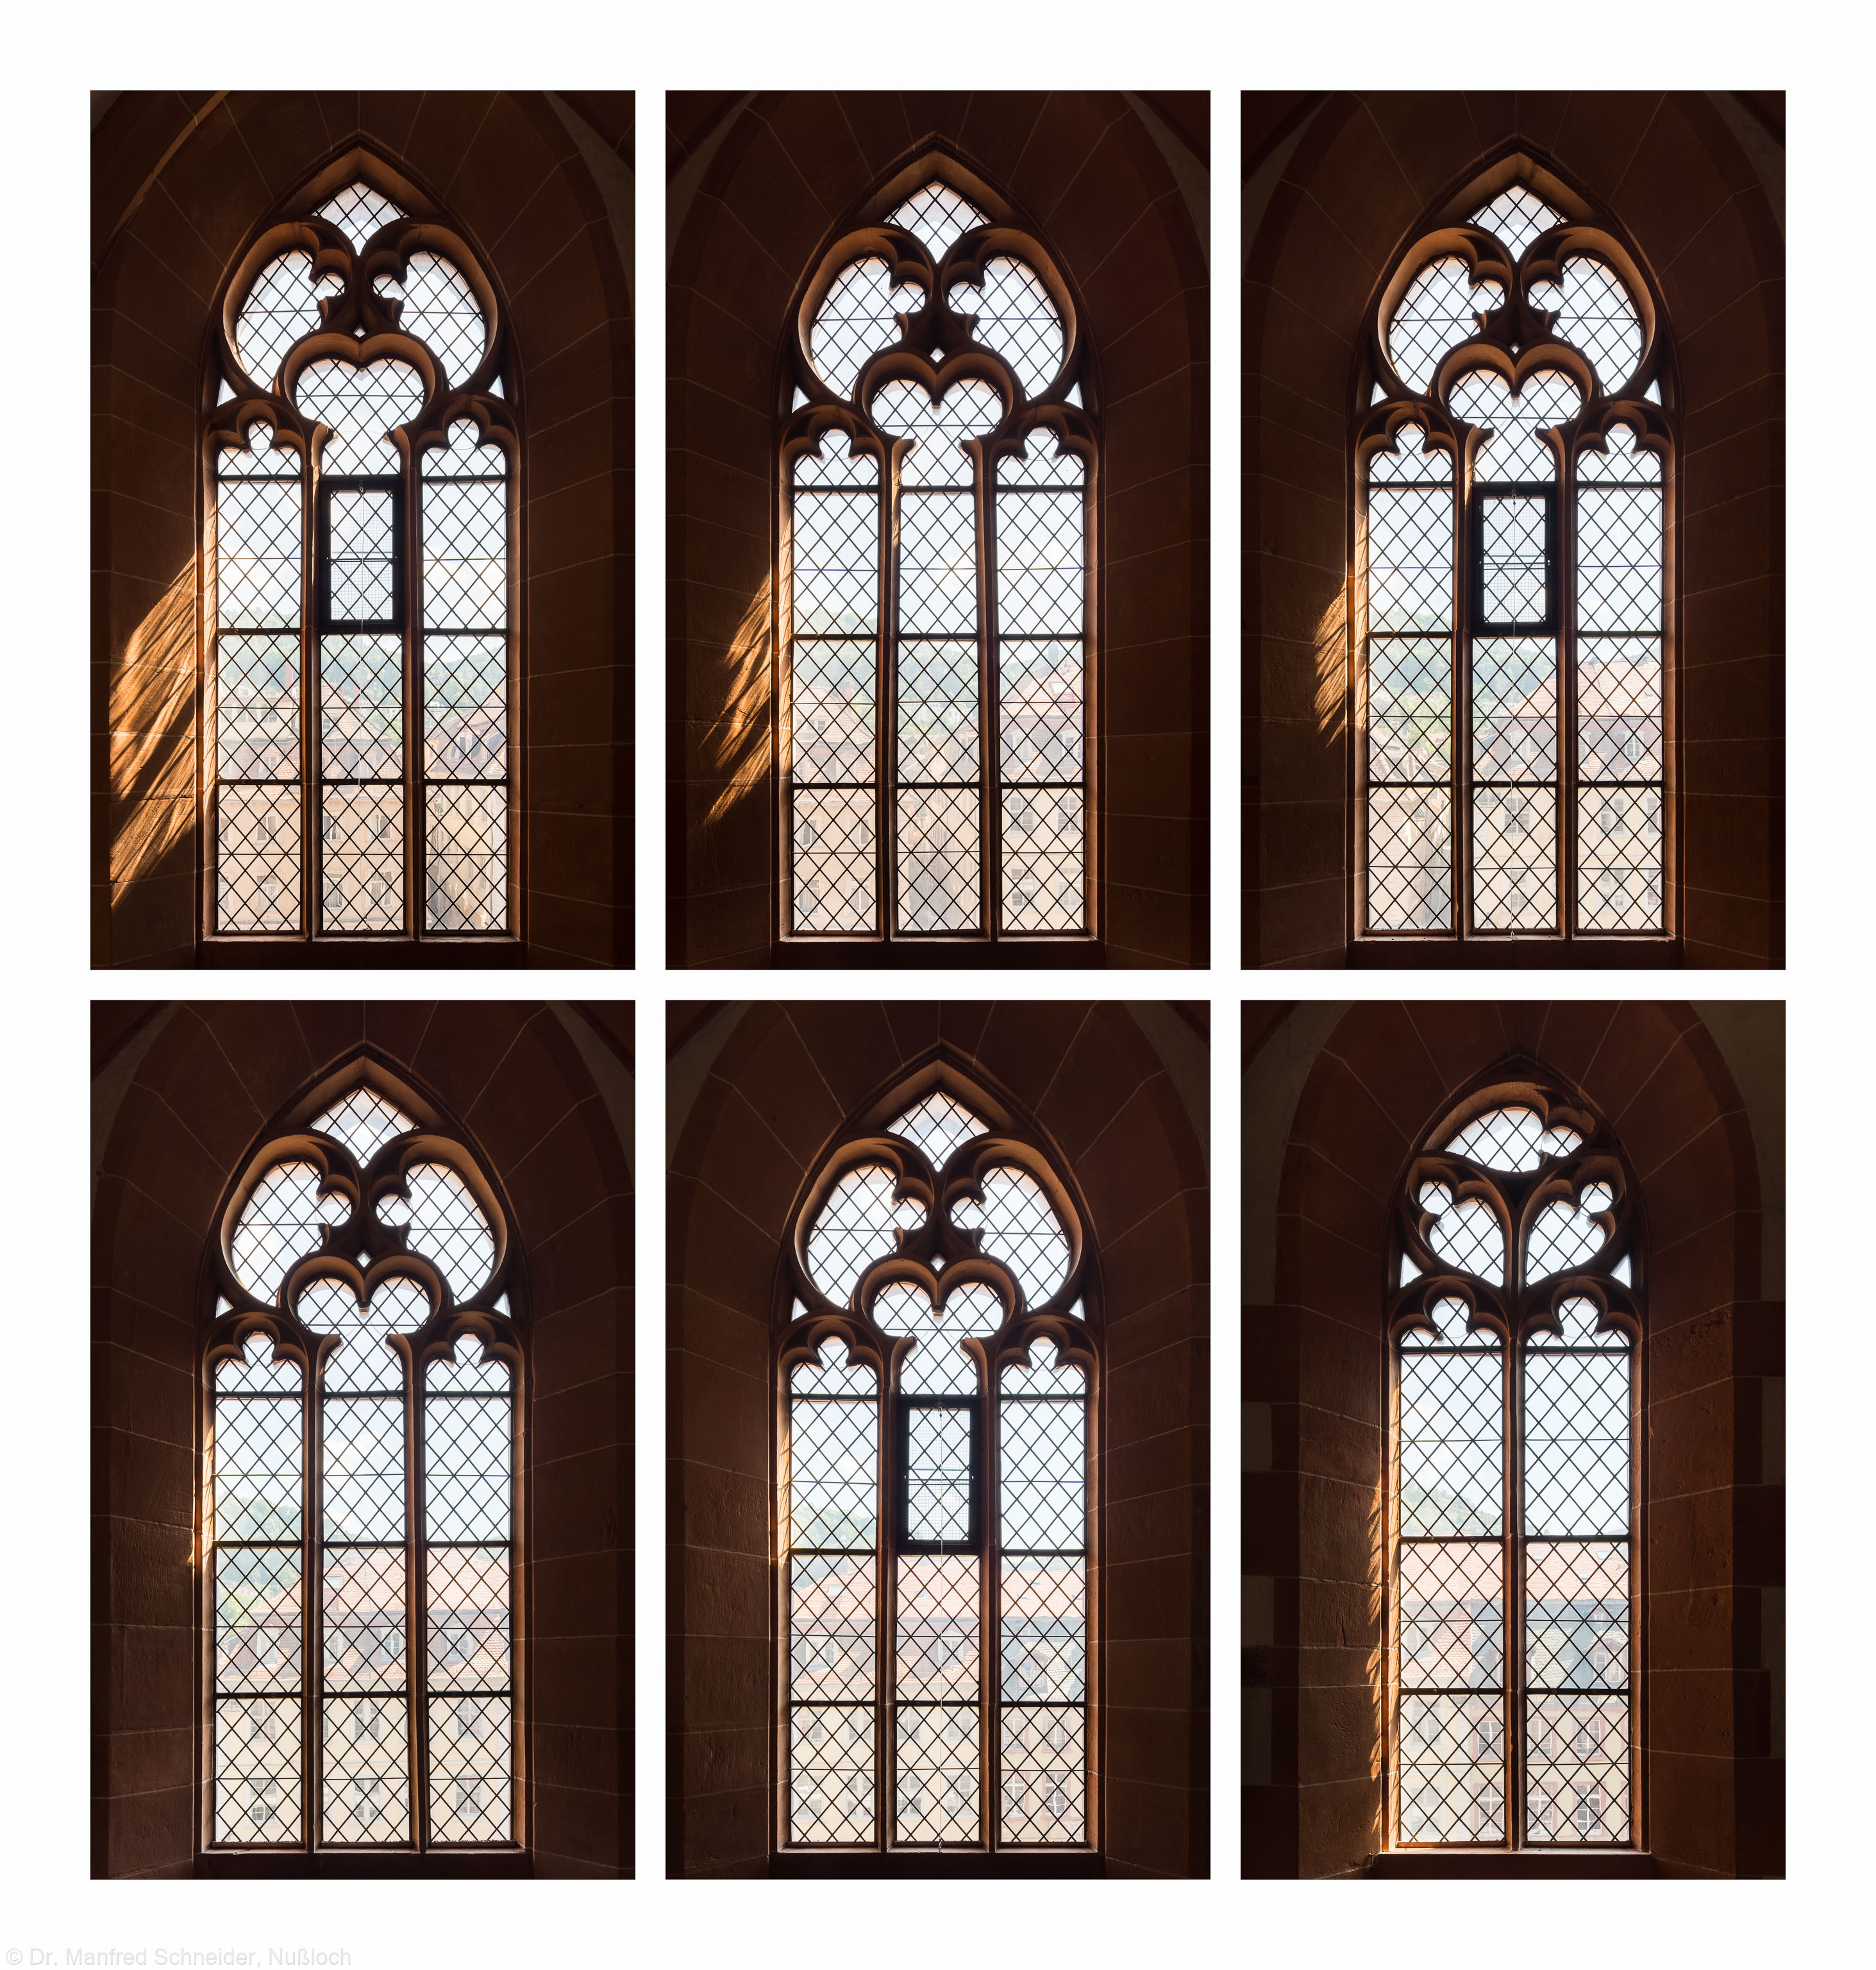 Heidelberg - Heiliggeistkirche - Südempore - 6./5./4. und 3./2./1. Joch, von Westen aus gezählt - Fenster und Maßwerk (aufgenommen im Juni 2015, am Nachmittag)